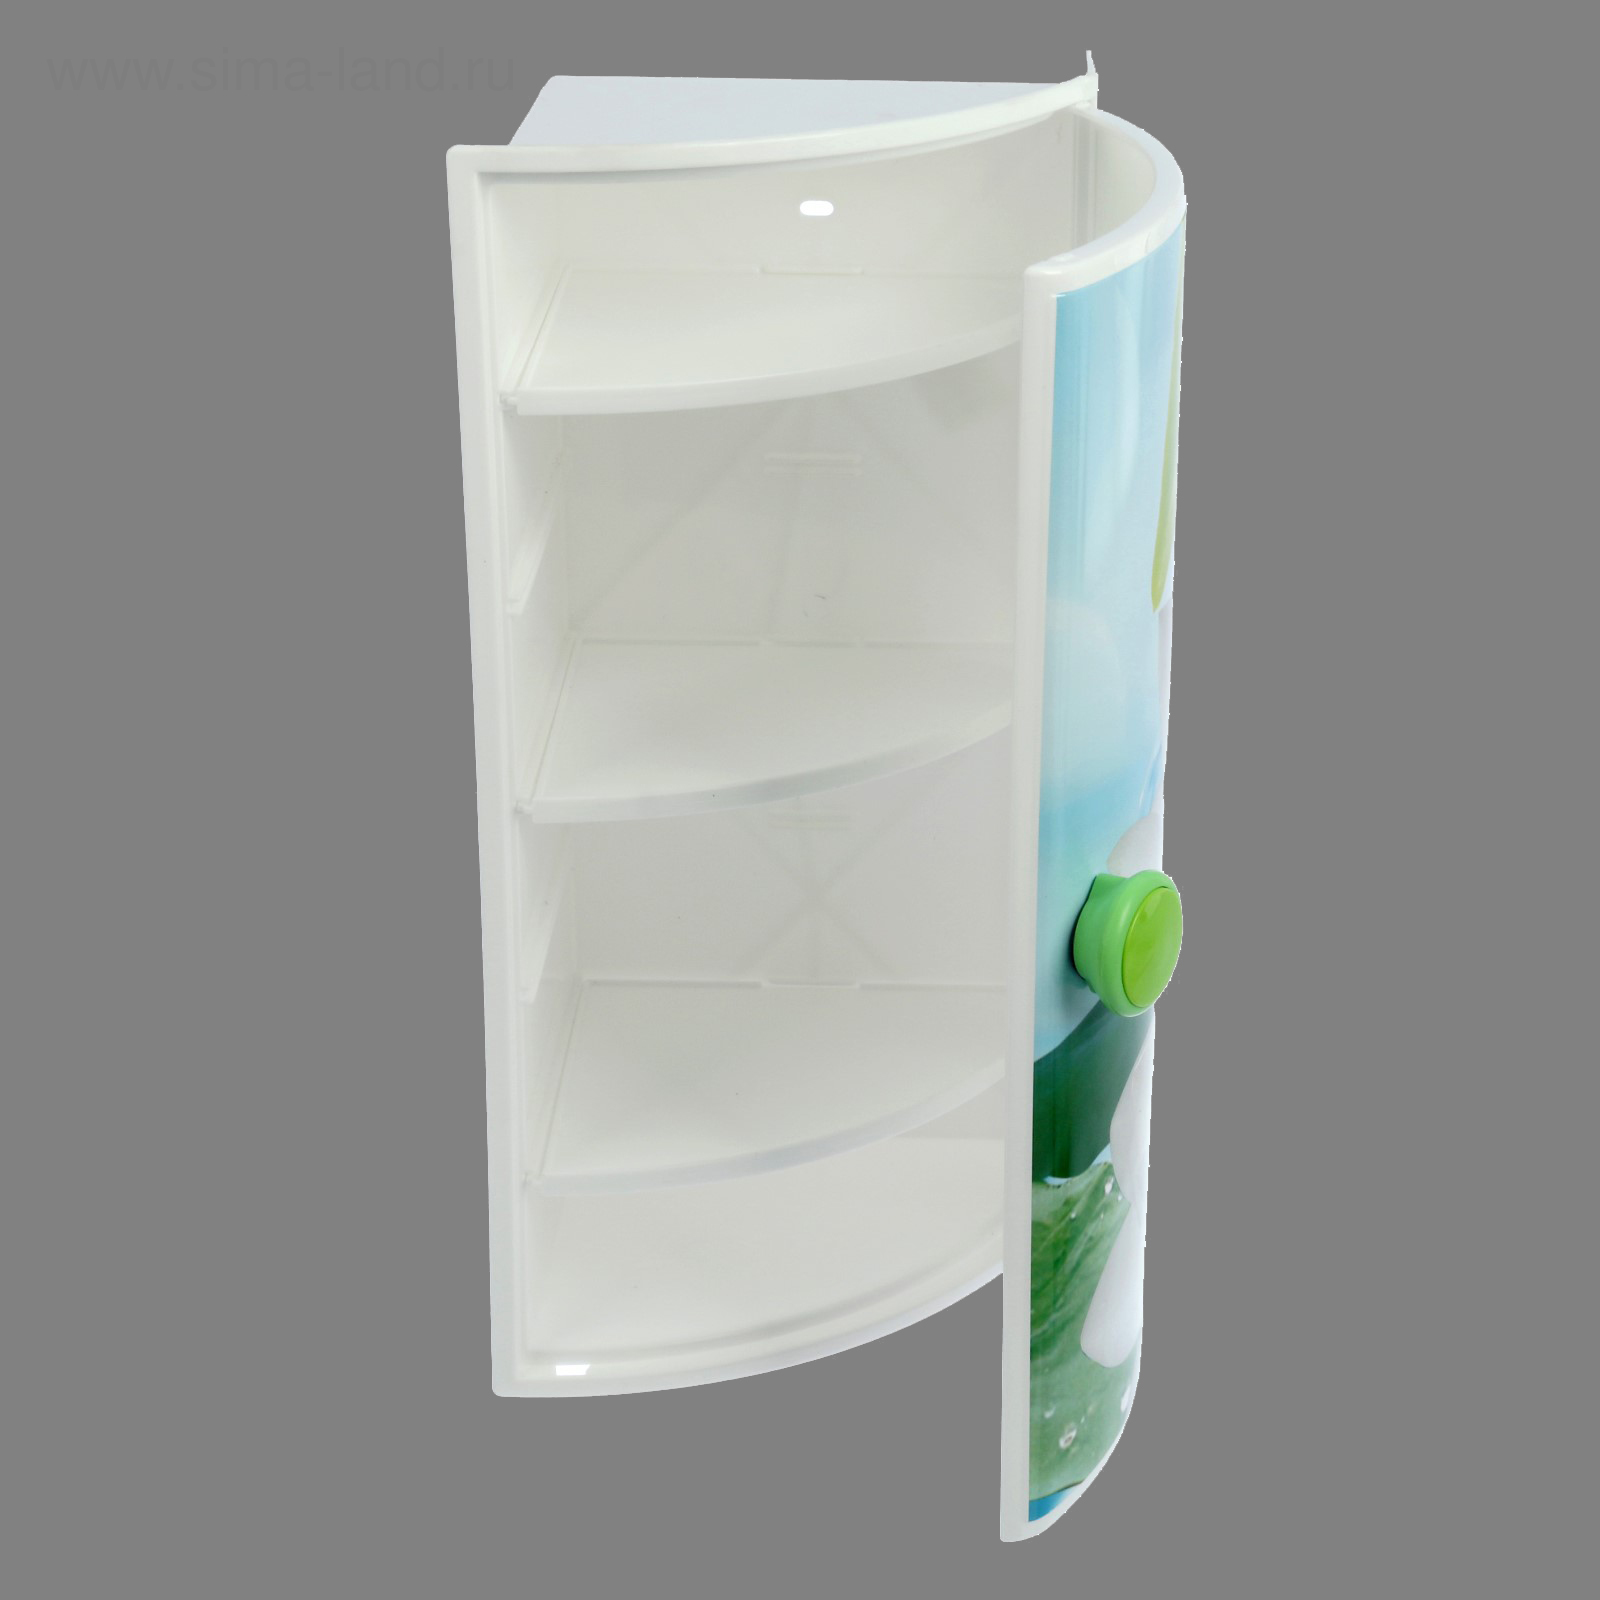 пластиковые полки и шкафчики для ванной